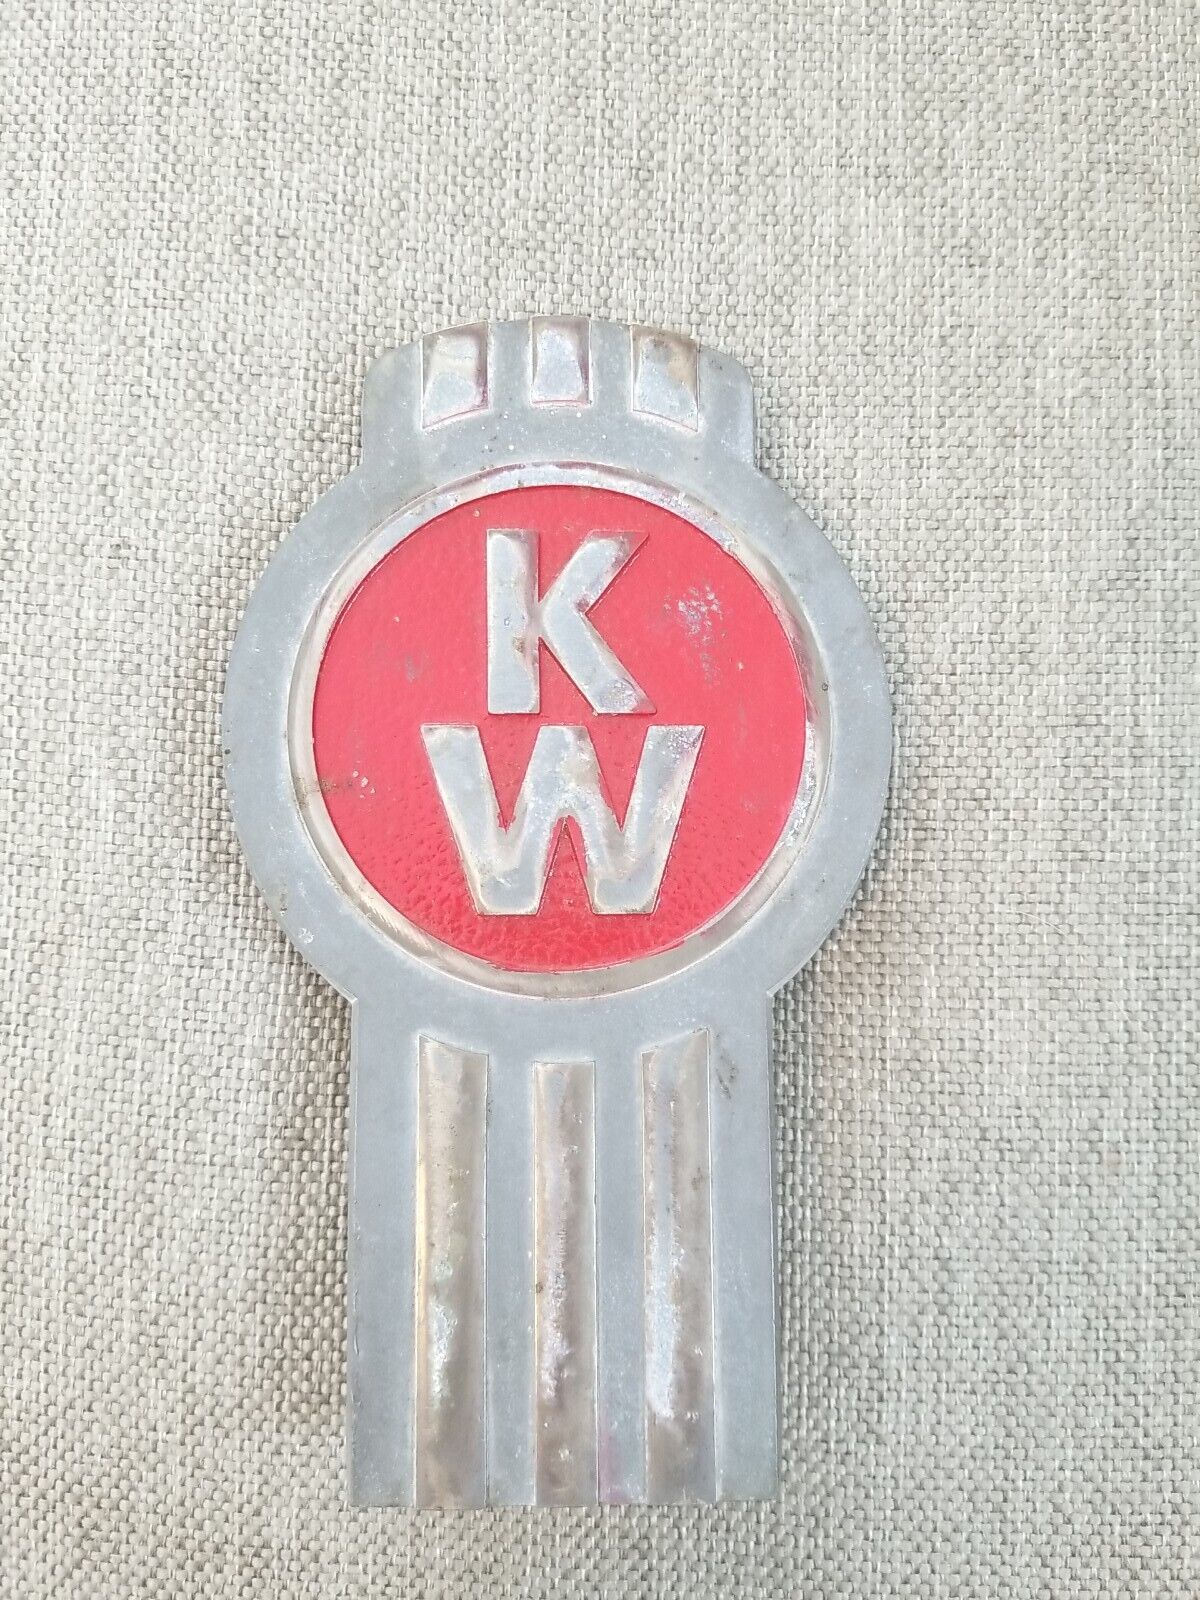 Vintage  Kenworth KW Truck Tractor Hood Badge Emblem PT. #170-26 Modified